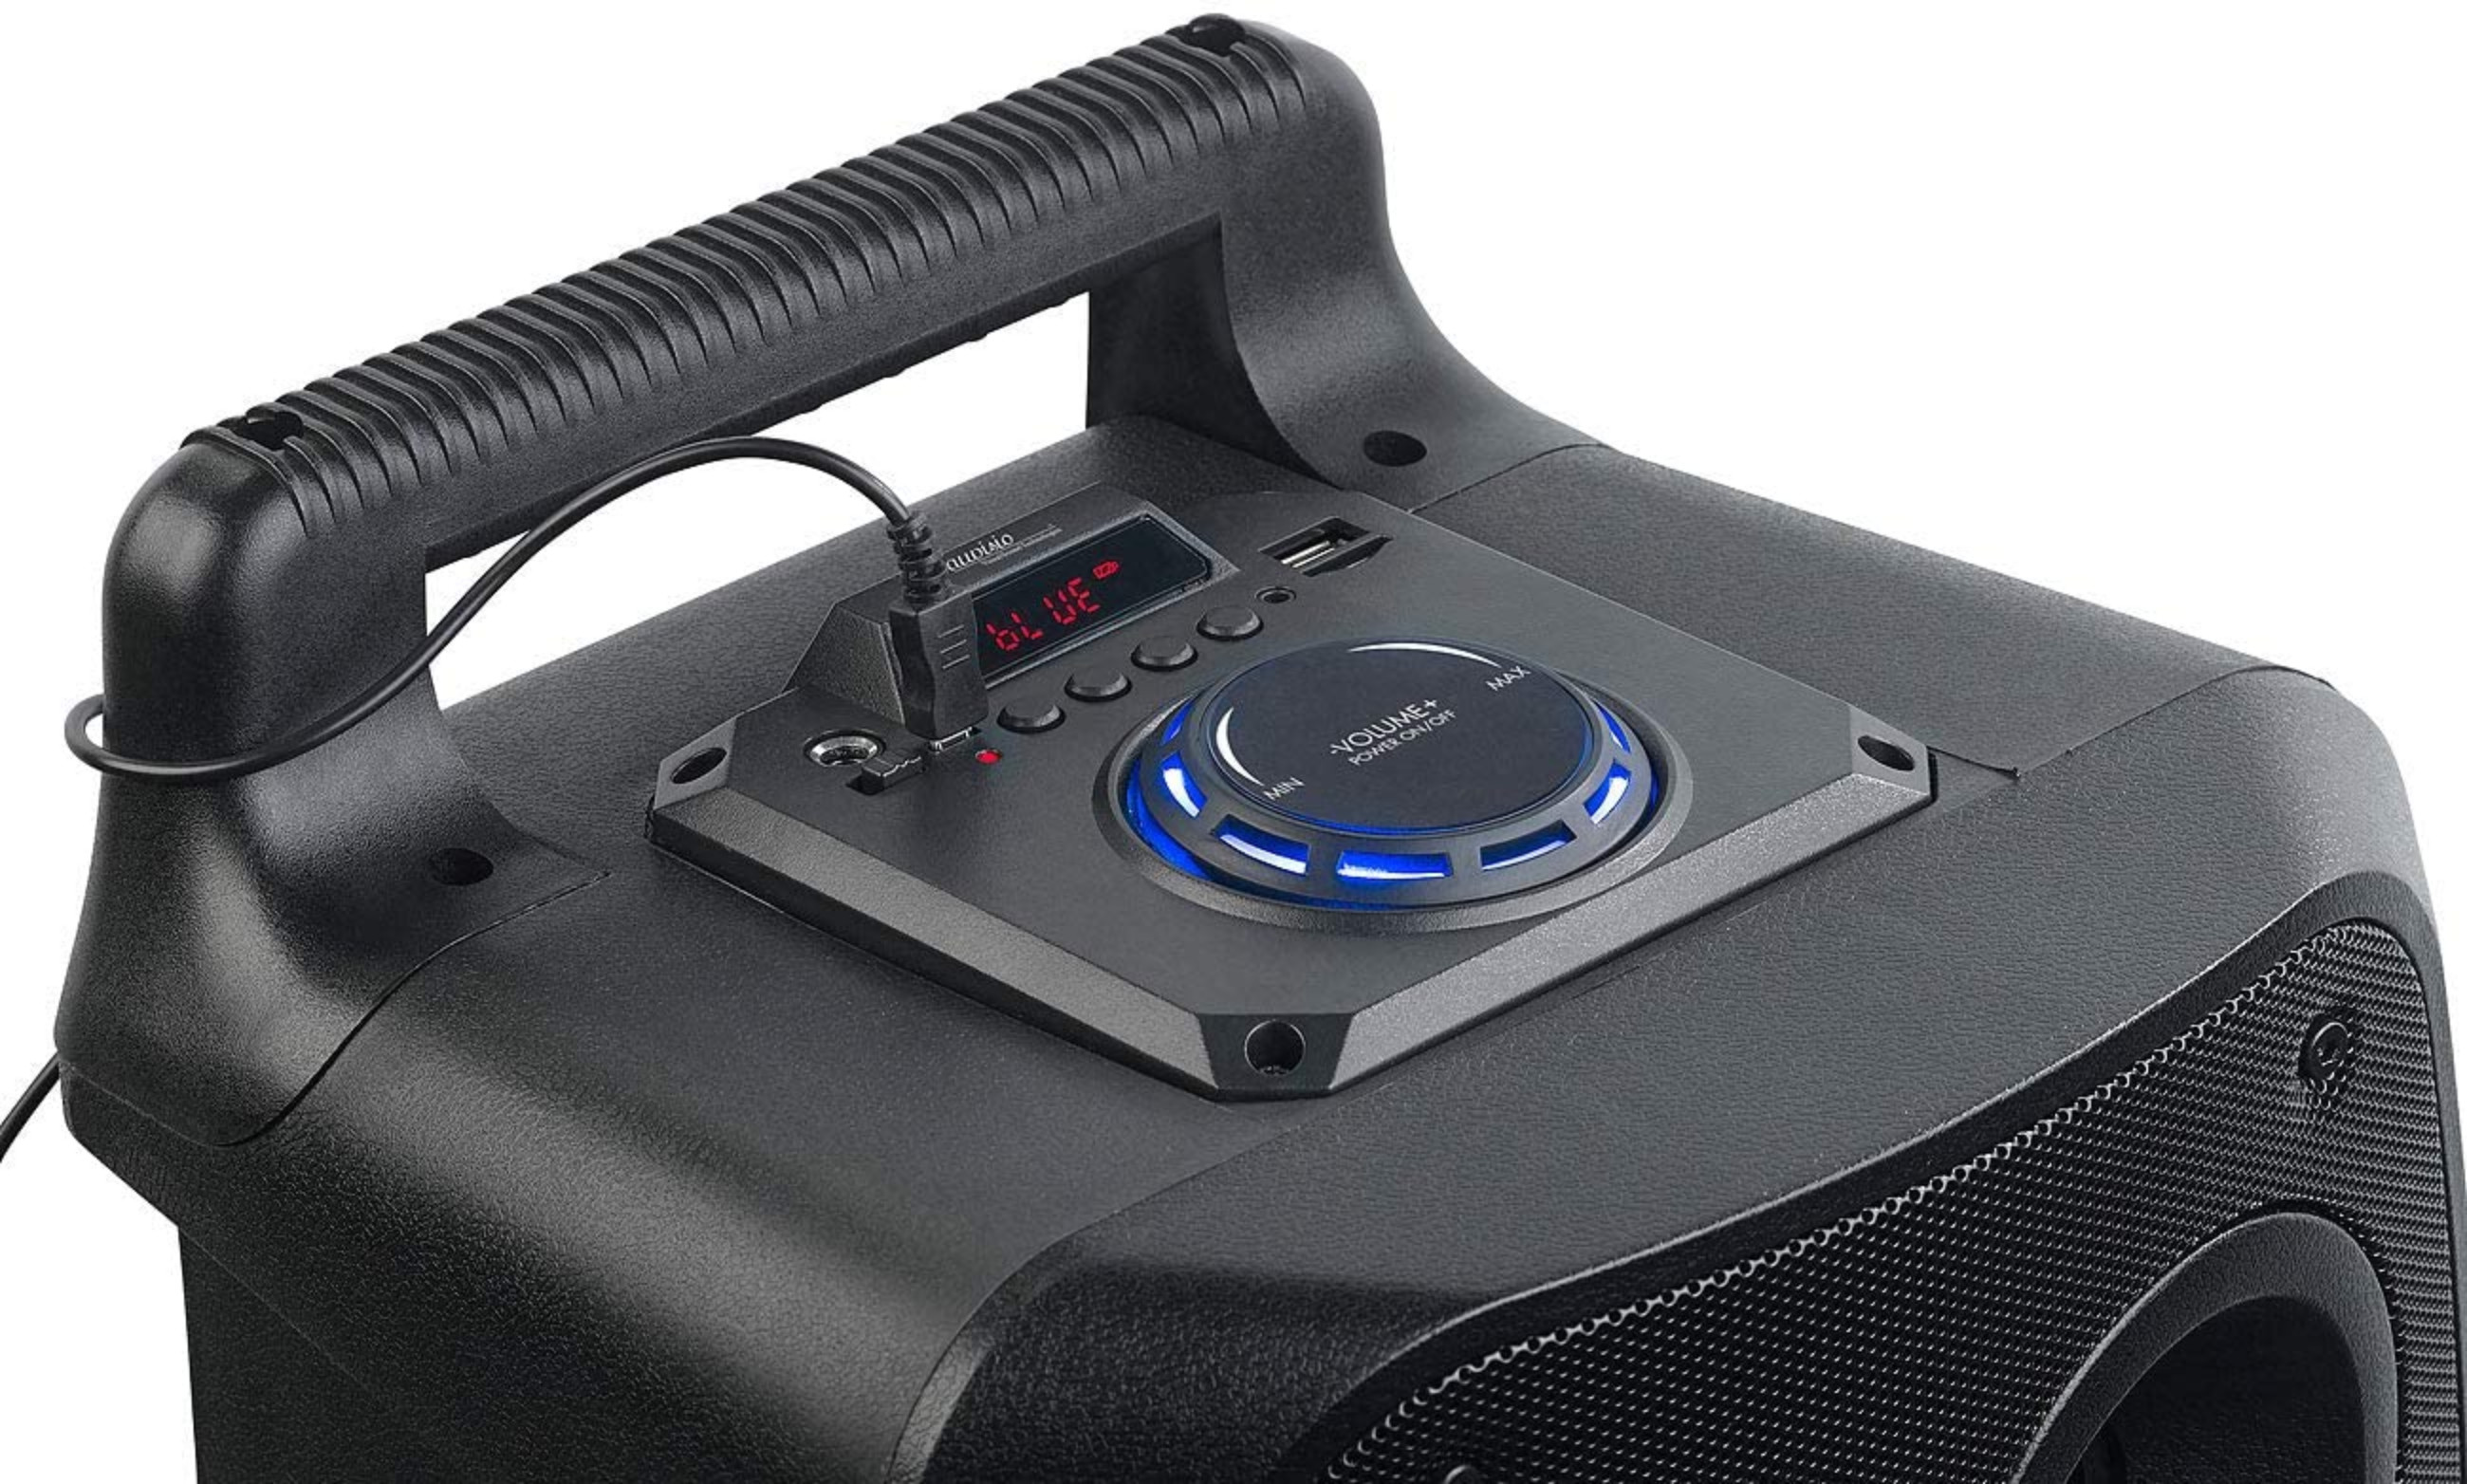 AUVISIO Lautsprecher (Aktiv-Lautsprecher, Partylautsprecher Bluetooth schwarz)